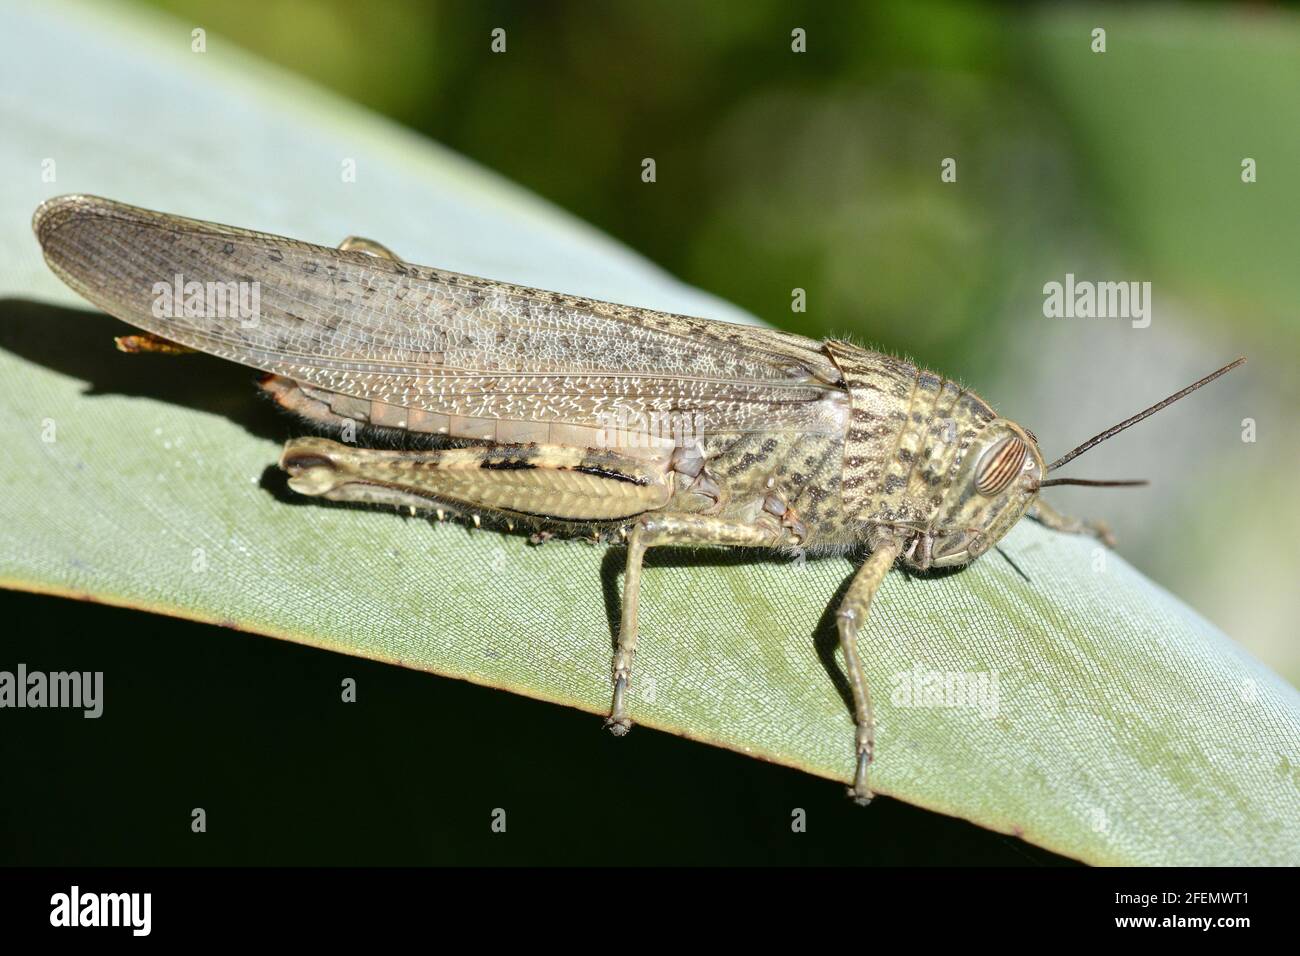 Francia, sud-est, il gracshopper si muove saltando con le sue gambe molto muscolose, ha lunghe antenne. Foto Stock